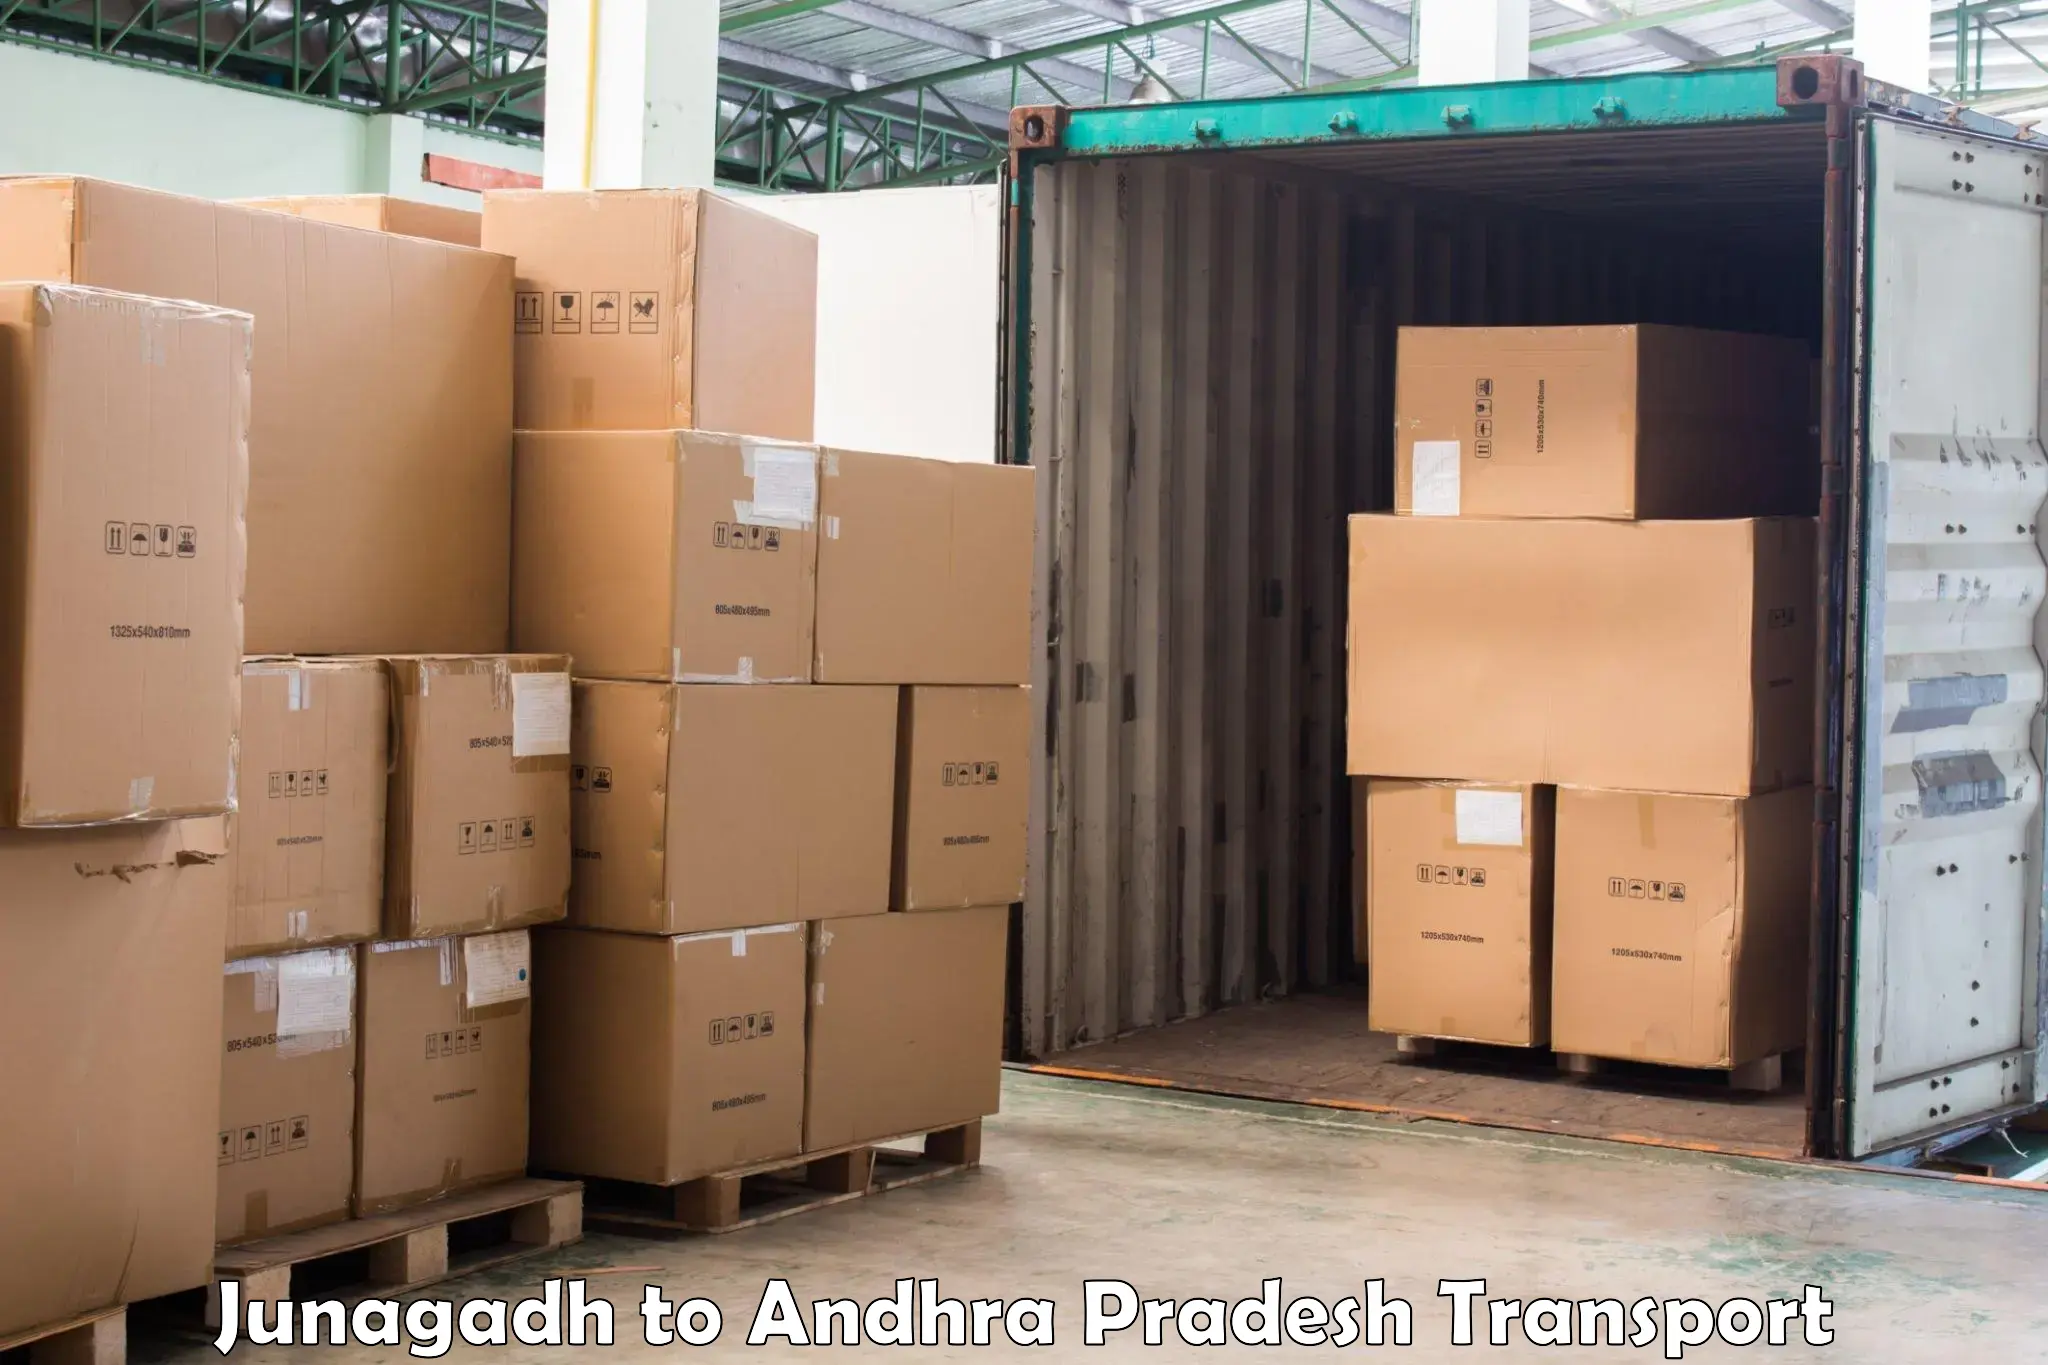 Online transport service Junagadh to Achampet Palnadu